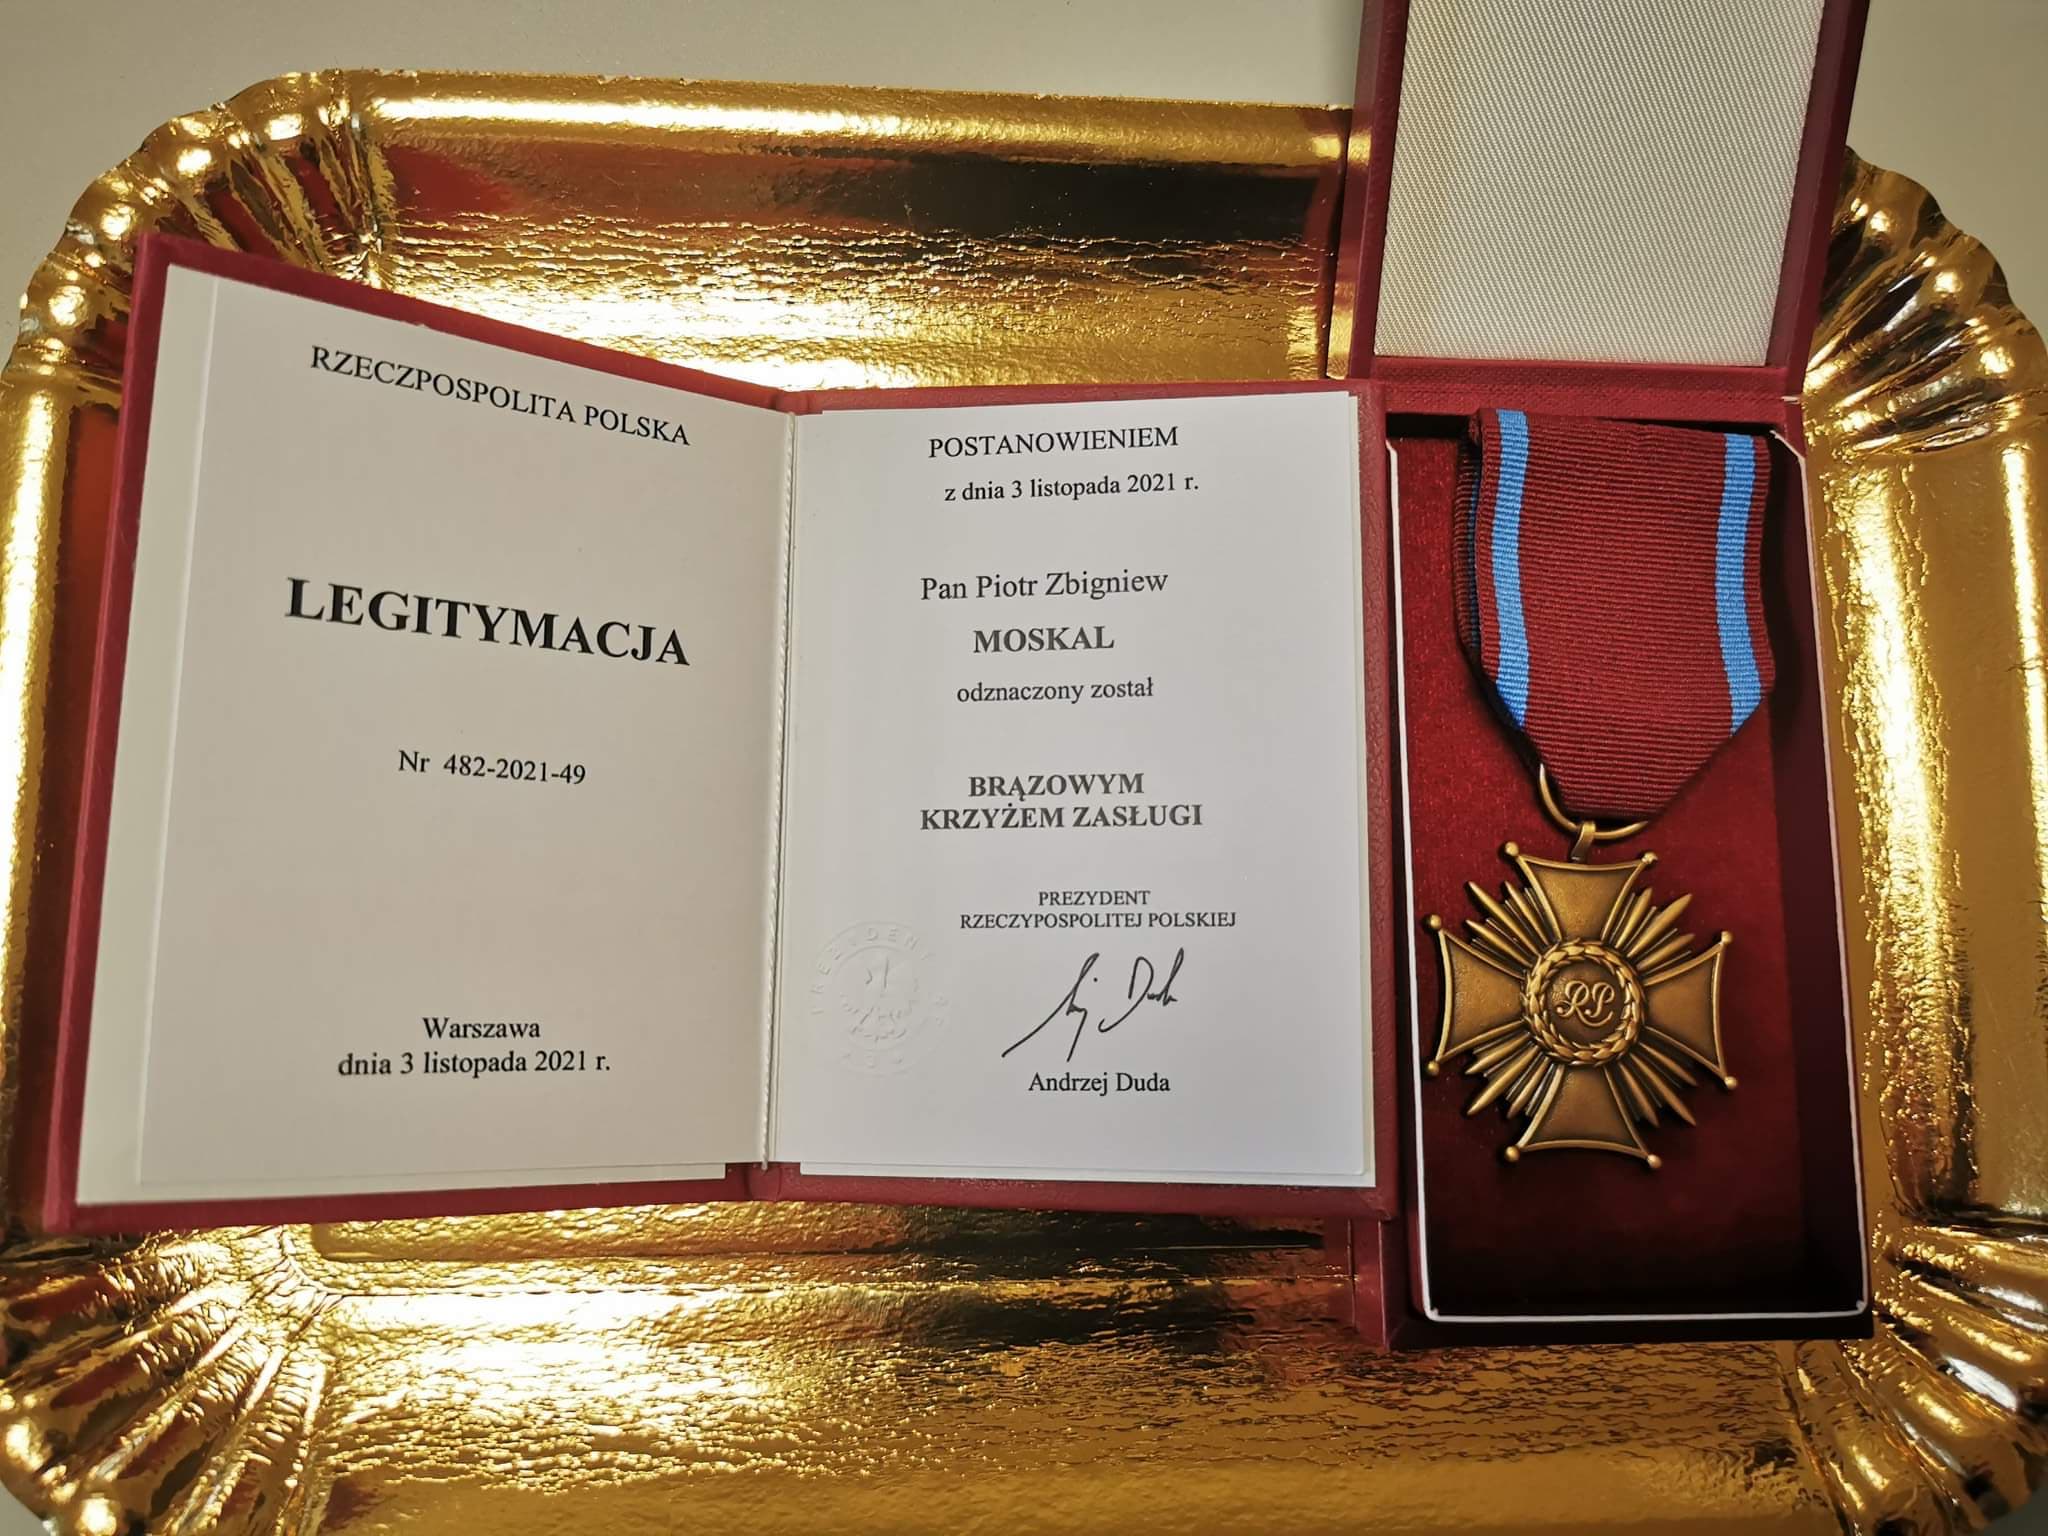 Zdjęcie przedstawia na złotej tacy położony w etui medal oraz legitymację